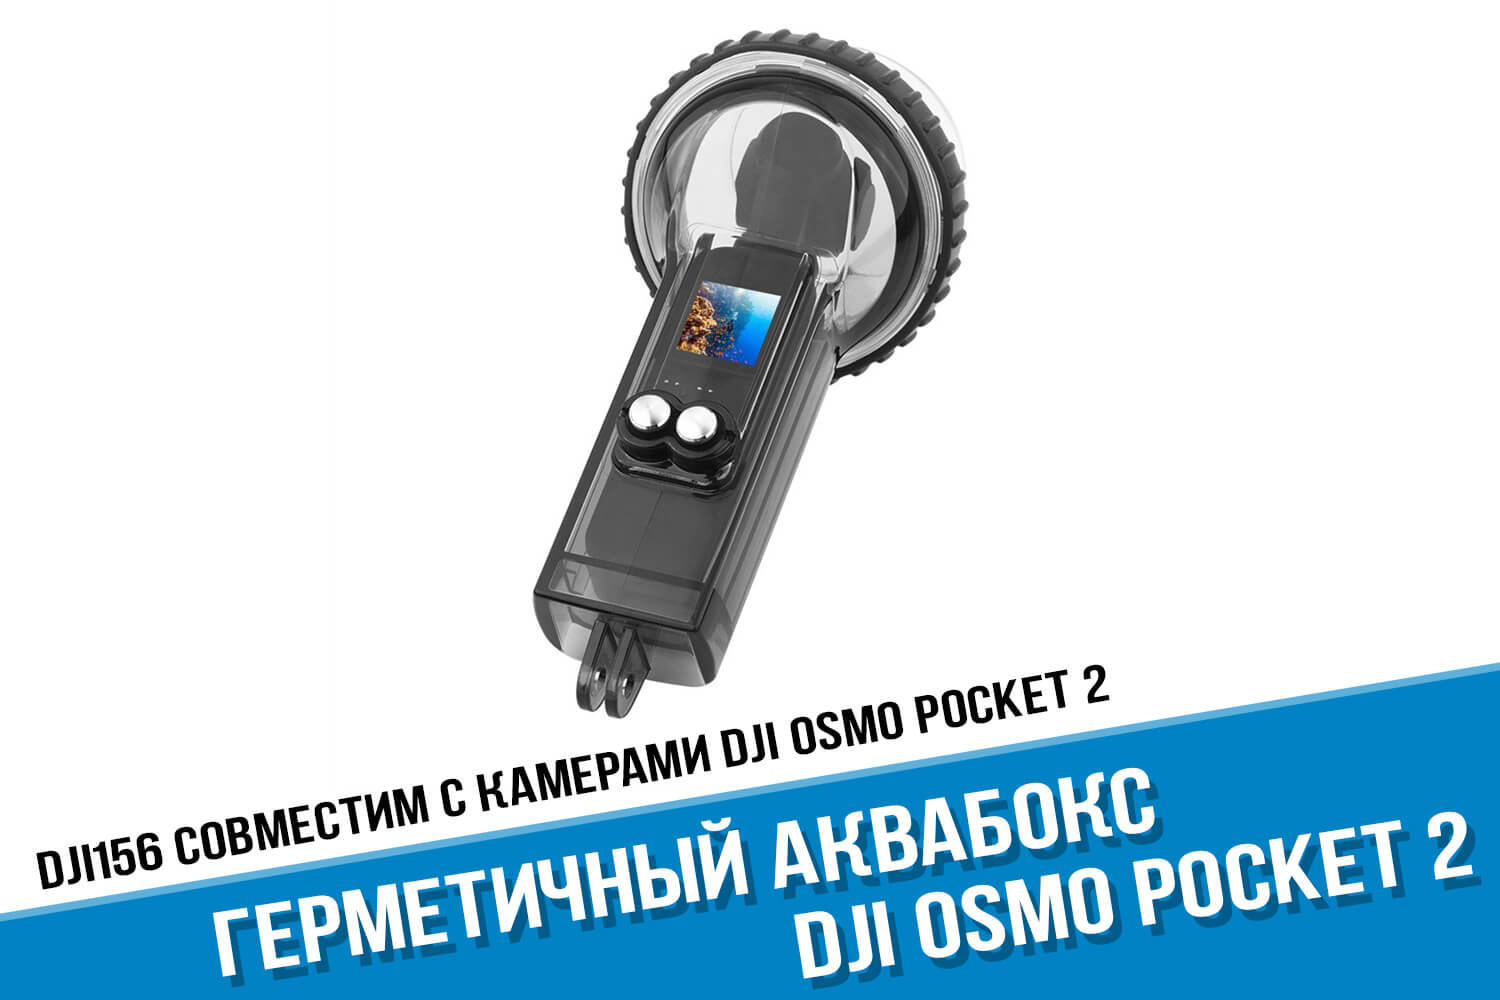 Аквабокс для камеры DJI Osmo Pocket 2